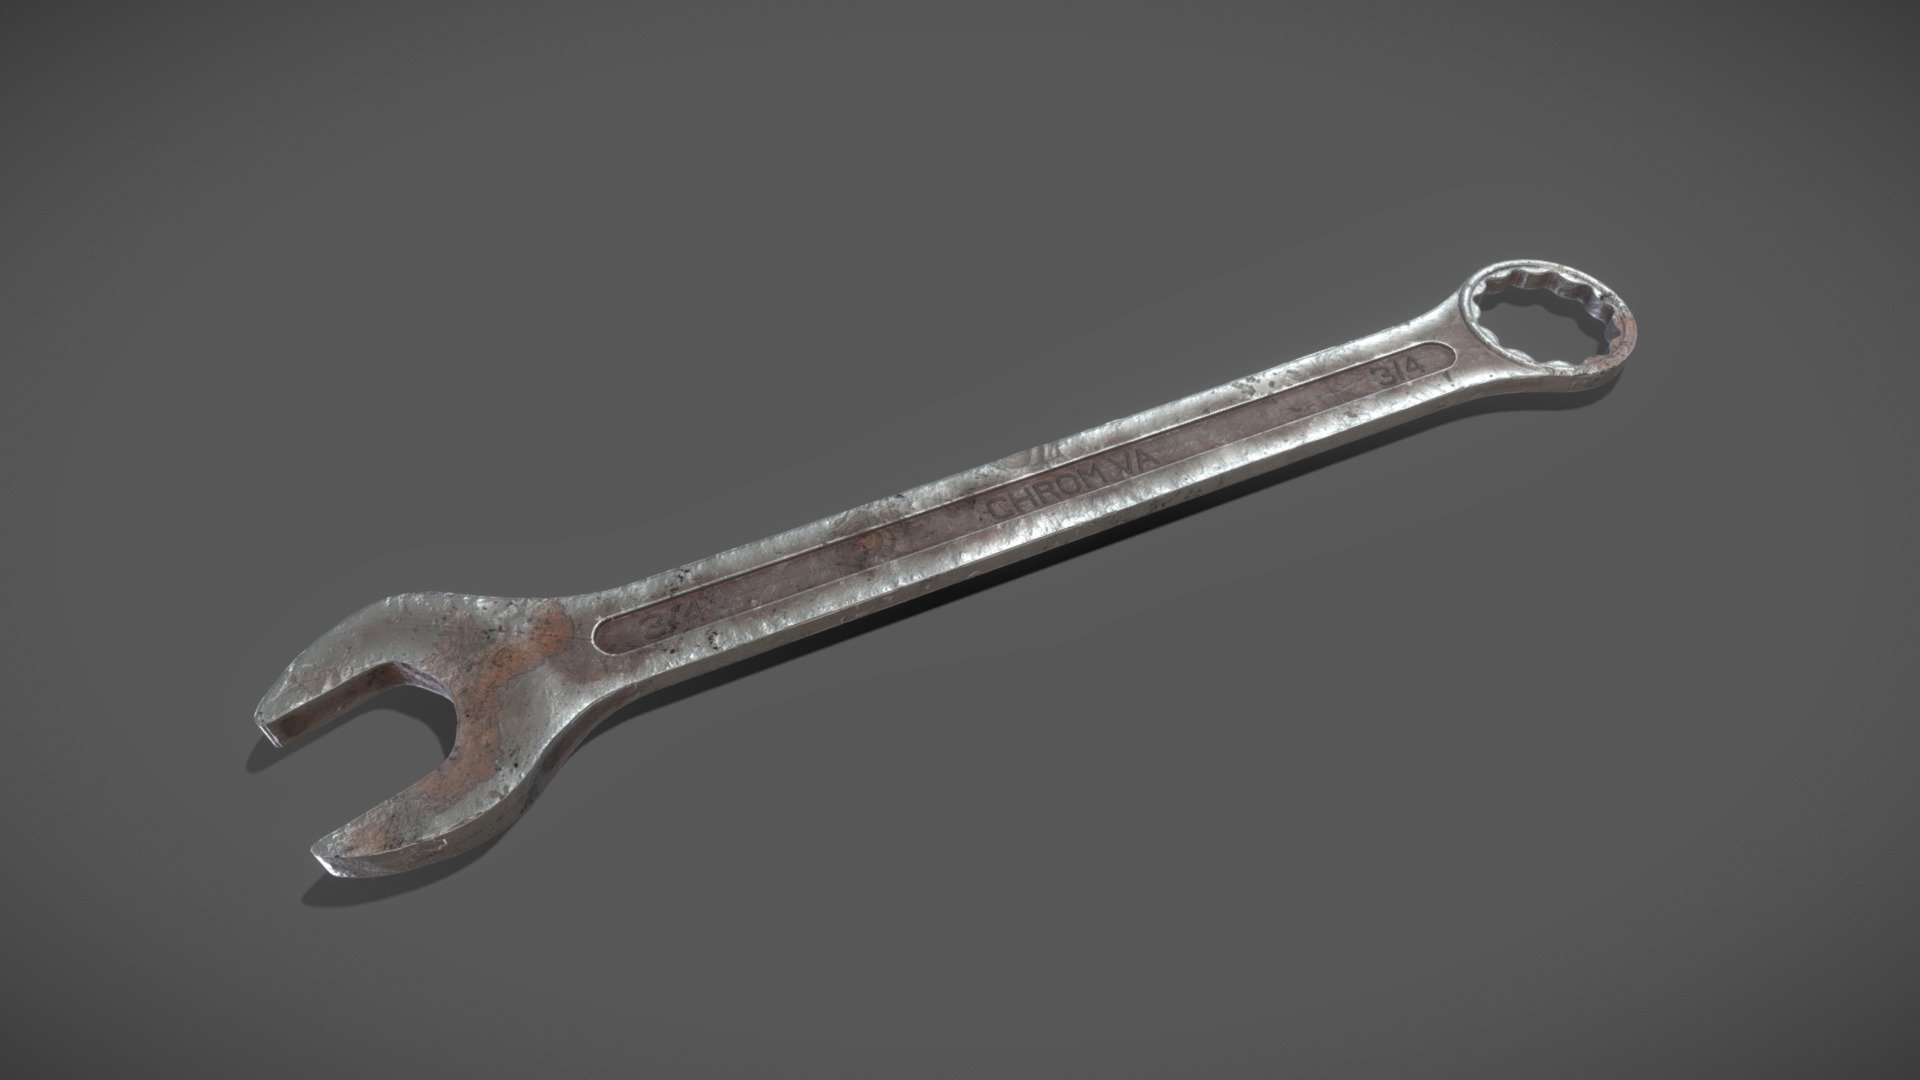 Wrench - Wrench - 3D model by Stijn Van Den Bossche (@stijnvandenbossche) 3d model